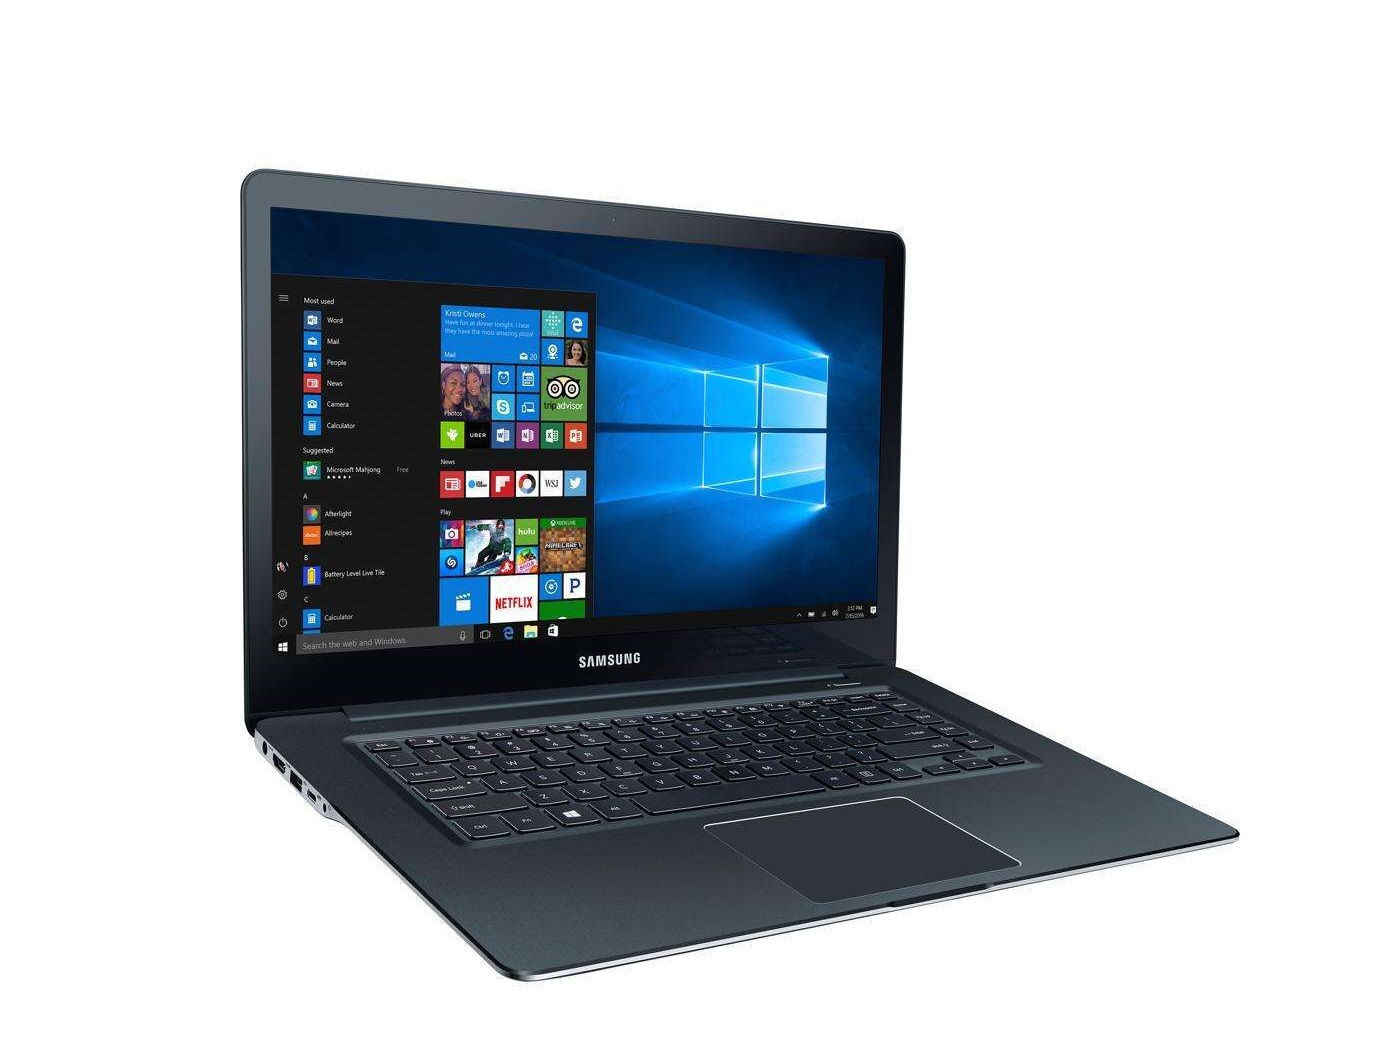 تصویر لپ تاپ سامسونگ SAMSUNG Notebook NP370E5L i7-6700HQ,16G,256G+1T,2G Geforce 920MX 